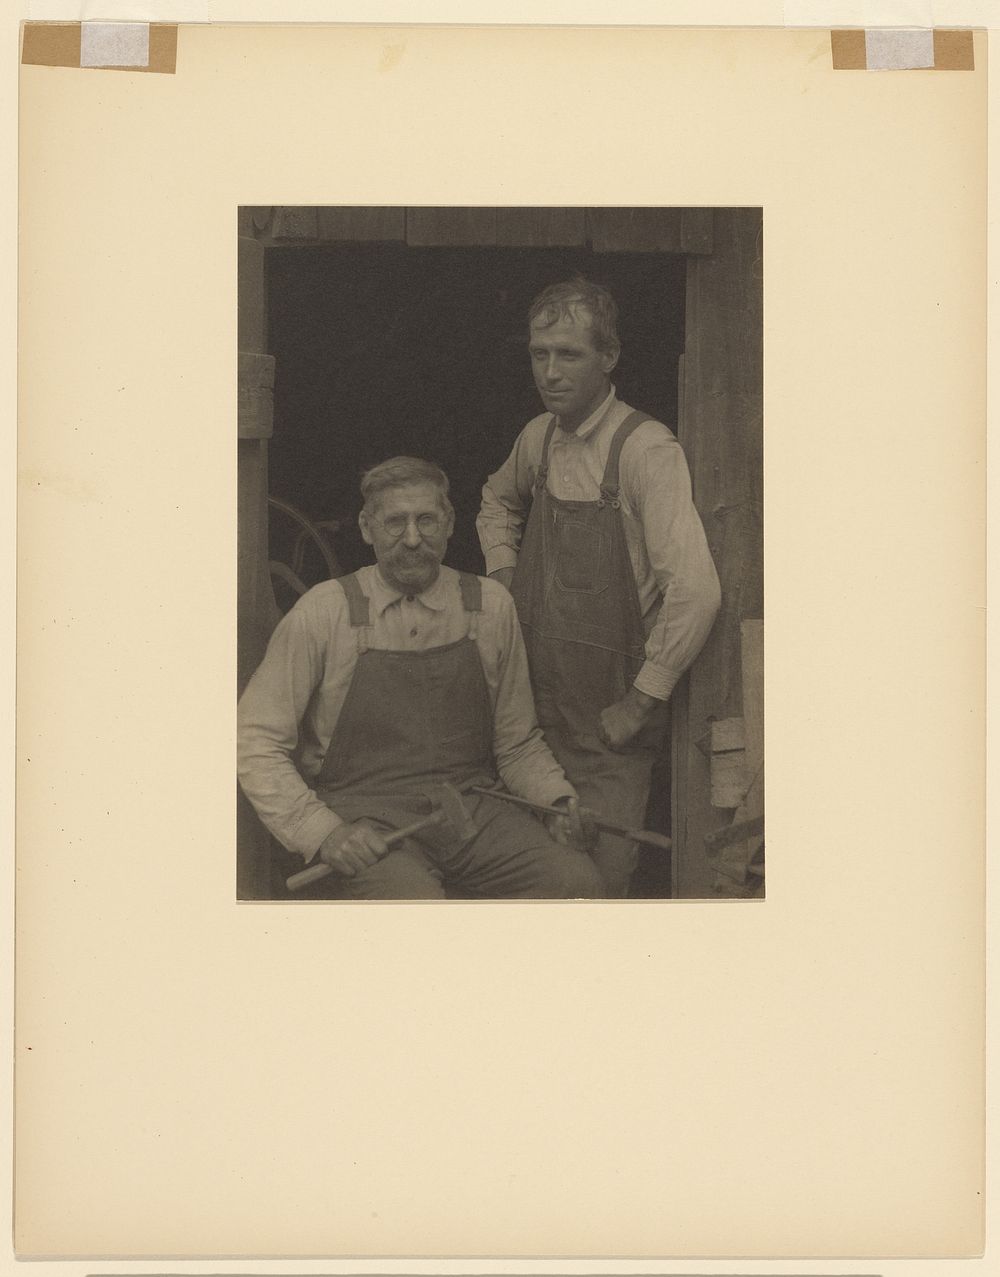 Two Men in Overalls in Doorway of a Barn by Doris Ulmann